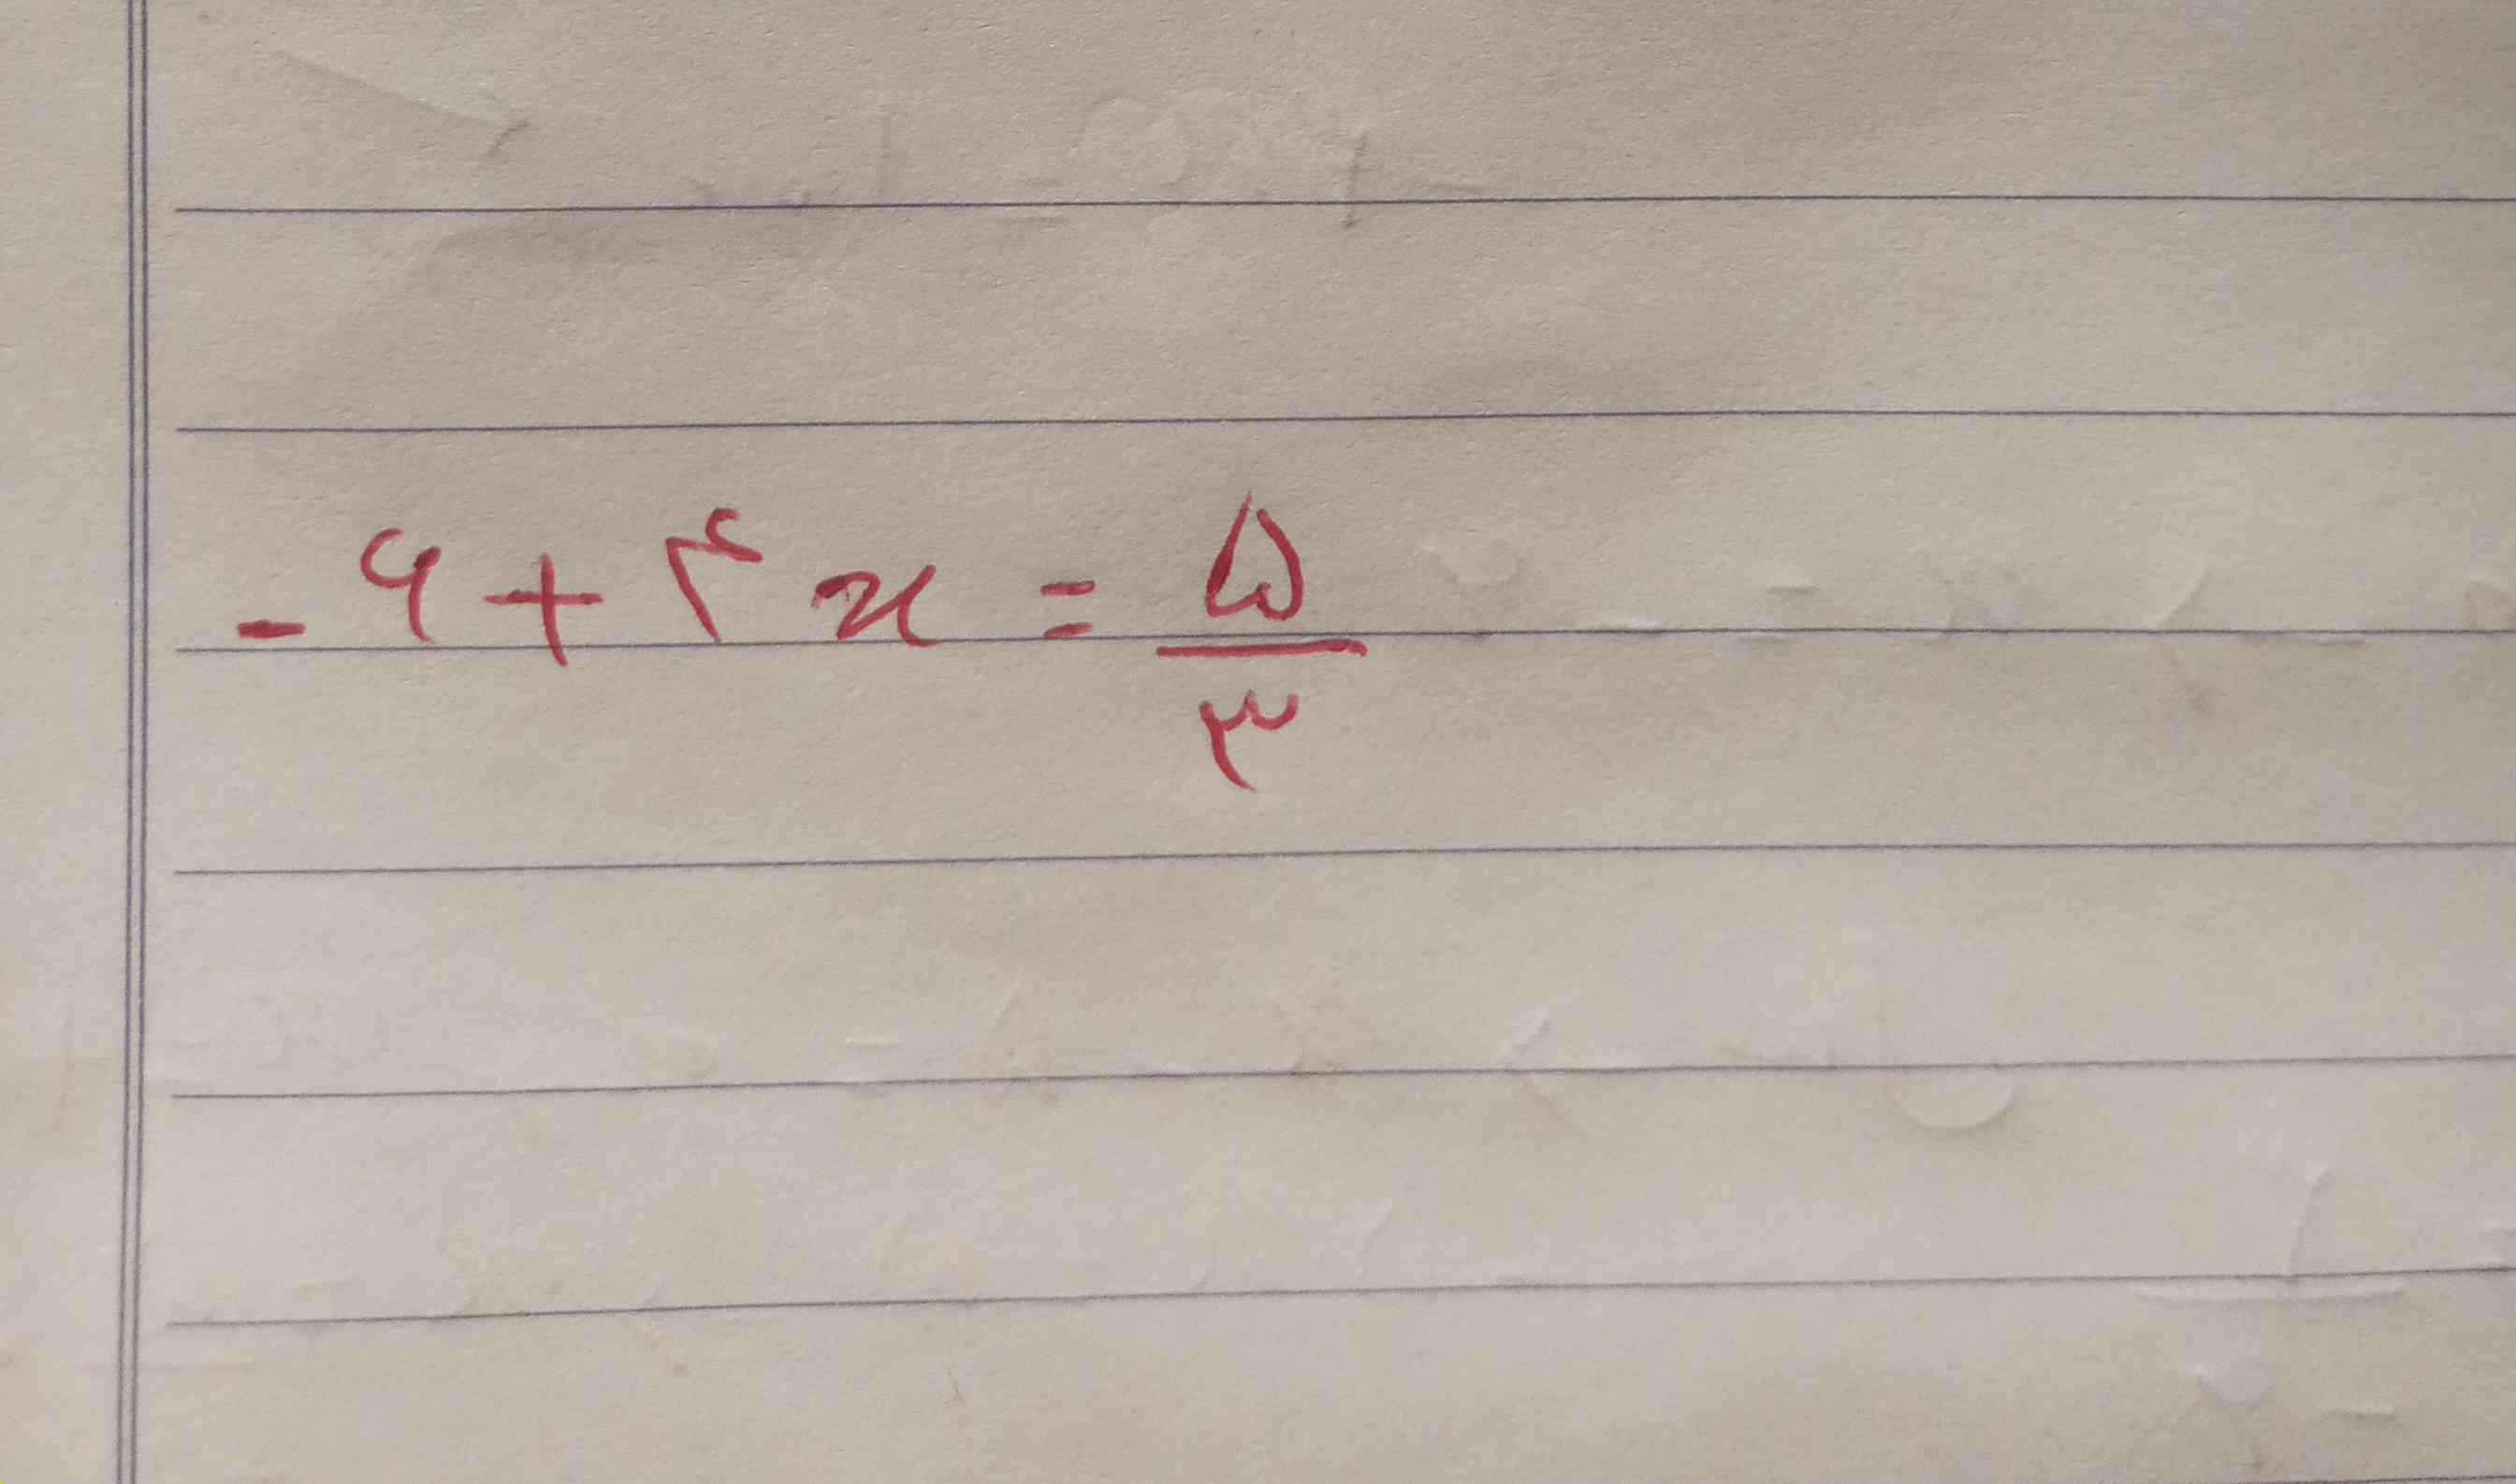 ببخشید جواب این معادله درجه اول  رو میدید 